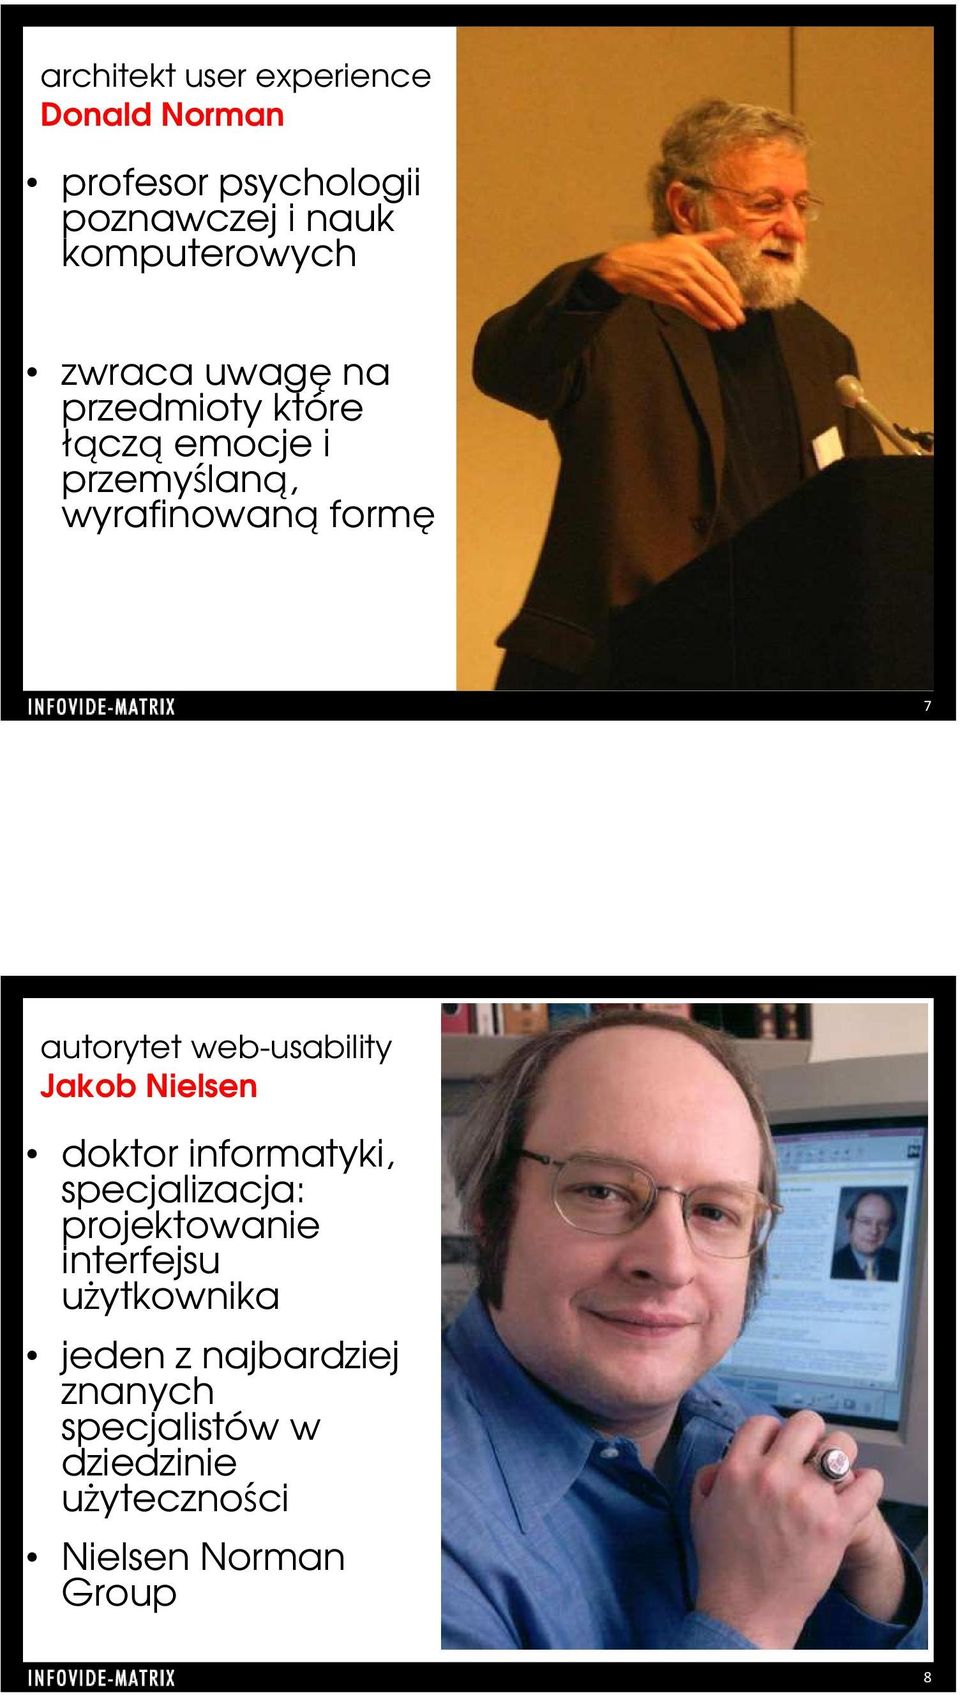 web-usability Jakob Nielsen doktor informatyki, specjalizacja: projektowanie interfejsu